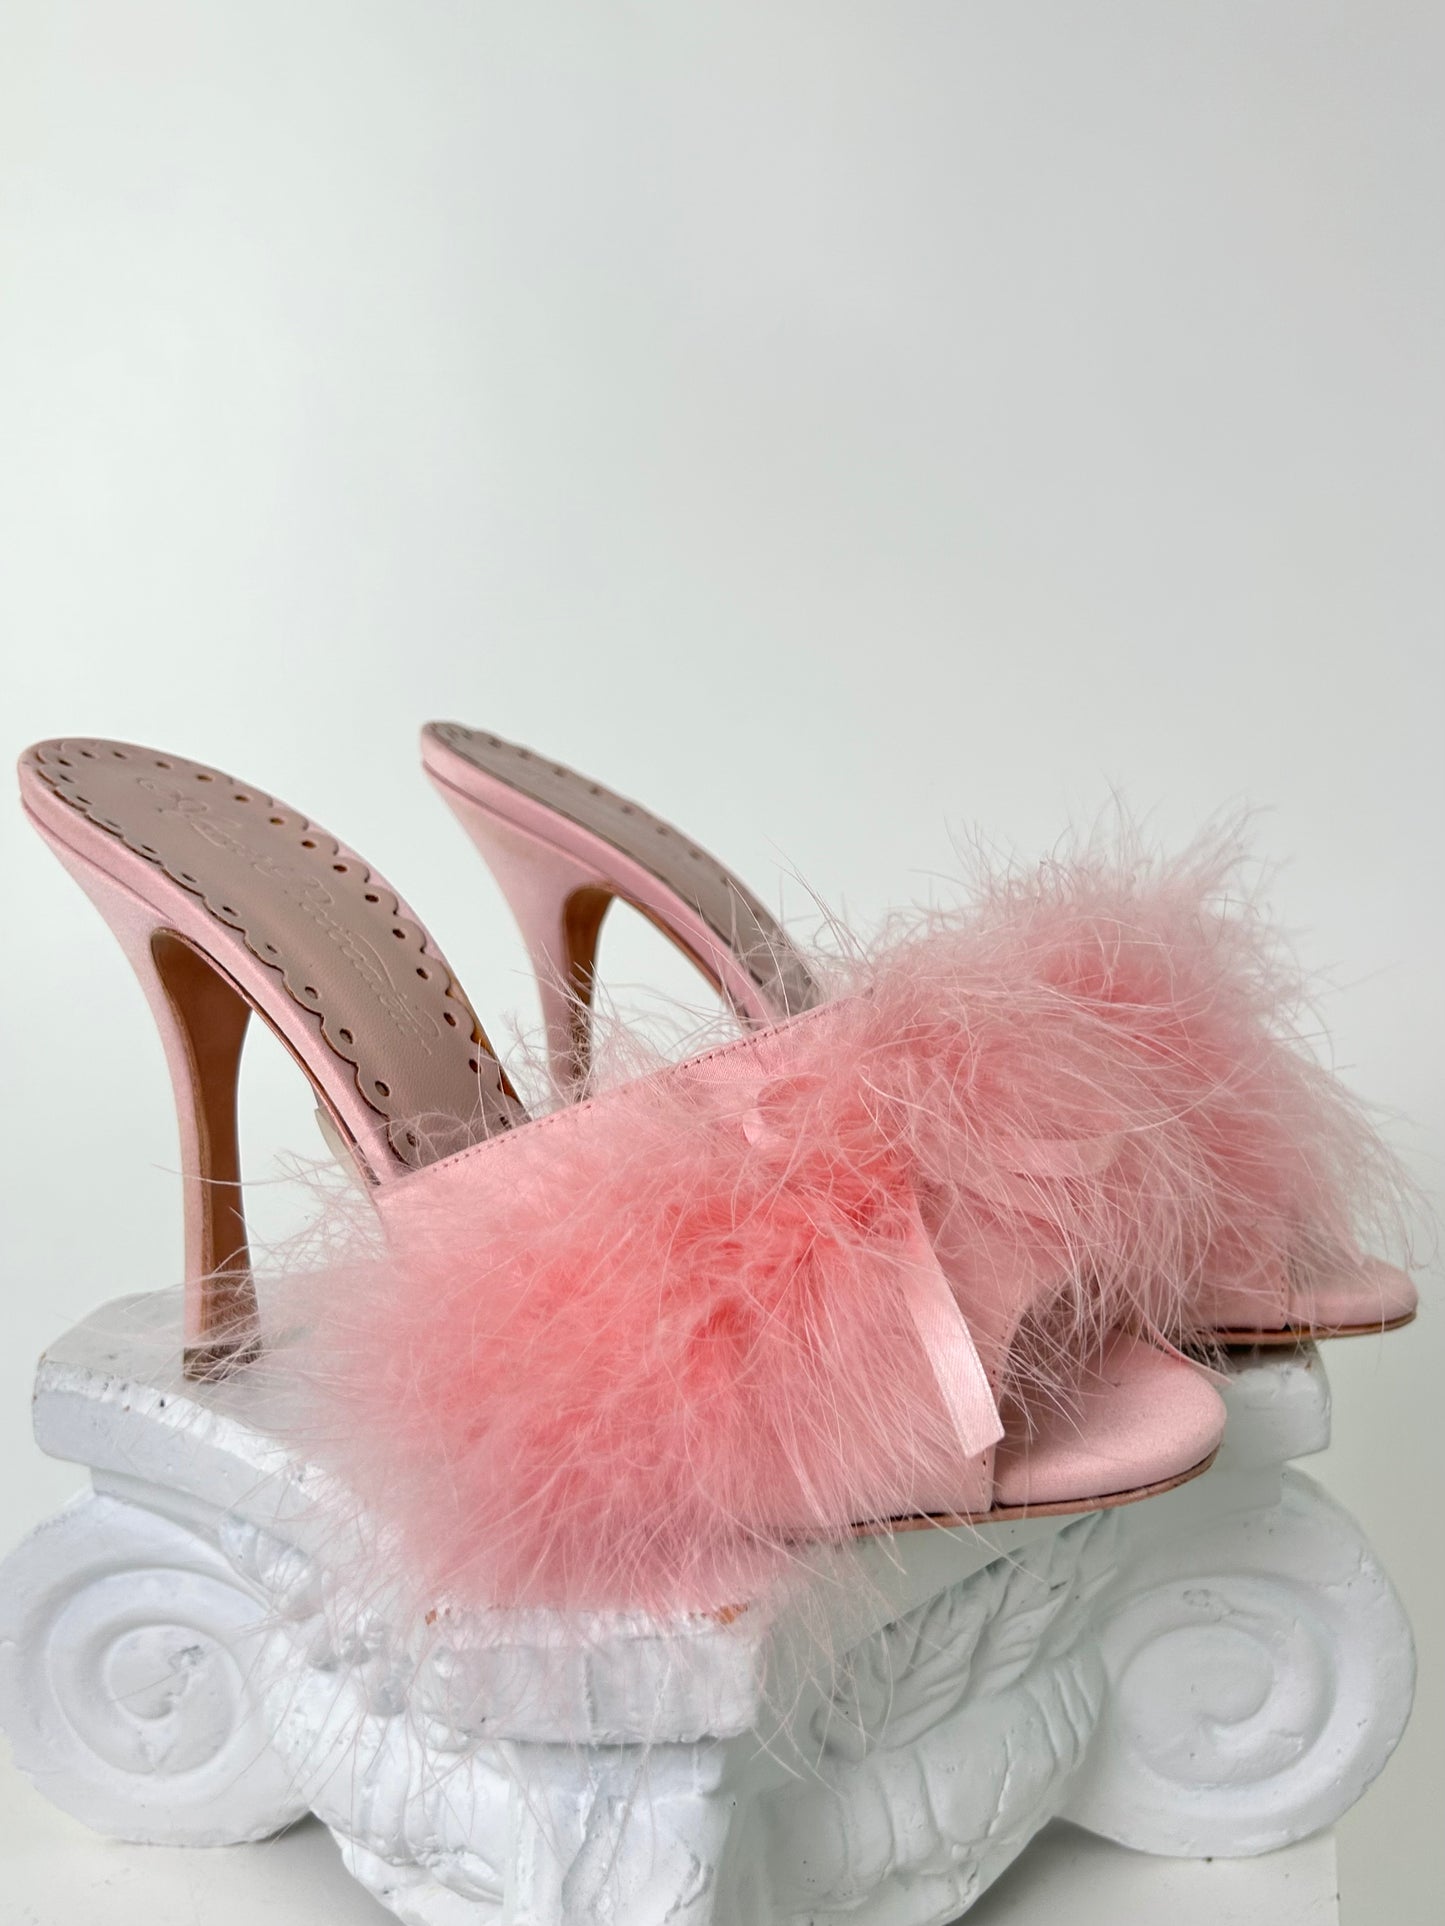 Pink Slide Heels